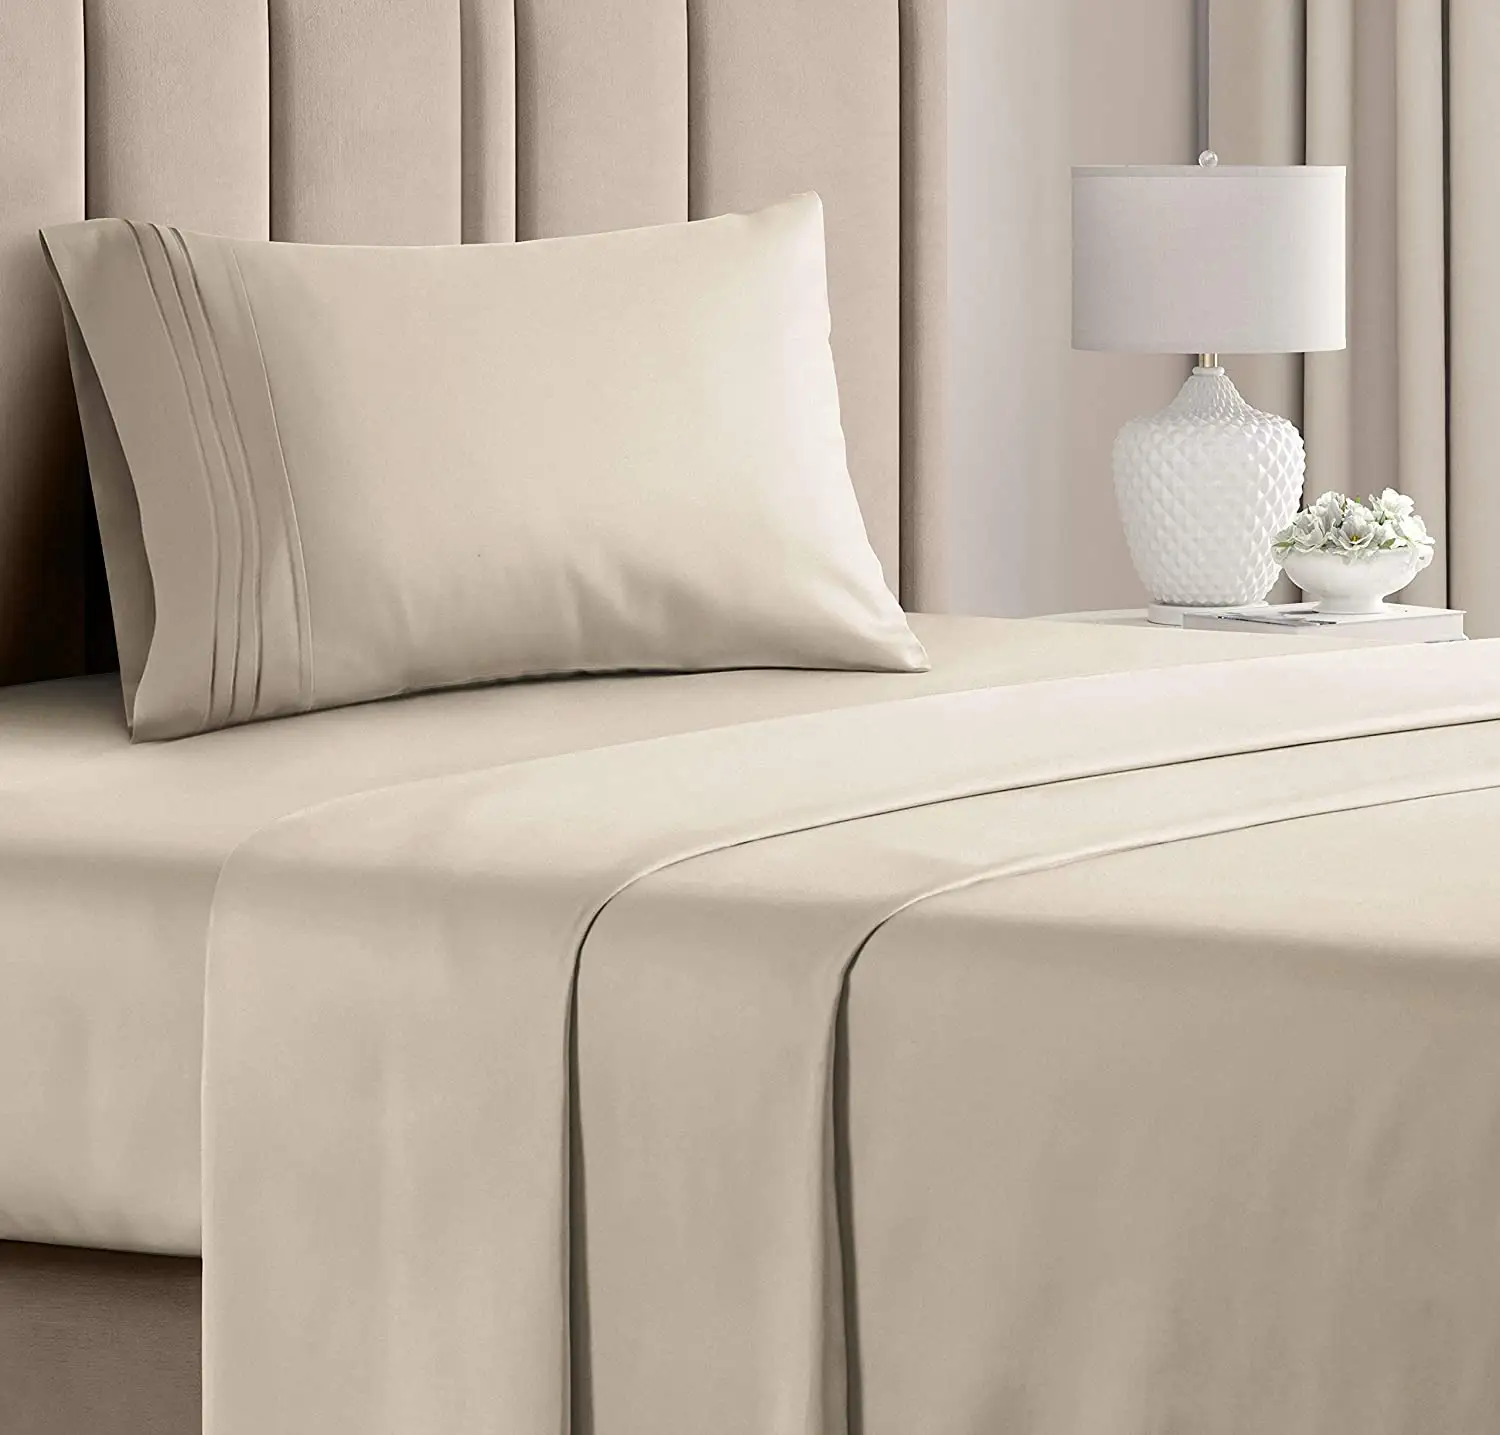 कस्टम 1000 धागा गिनती 100% कपास 4 Pcs Bedsheet होटल डिजाइन बिस्तर बिस्तर OEM ODM नई डिजाइन चादरें